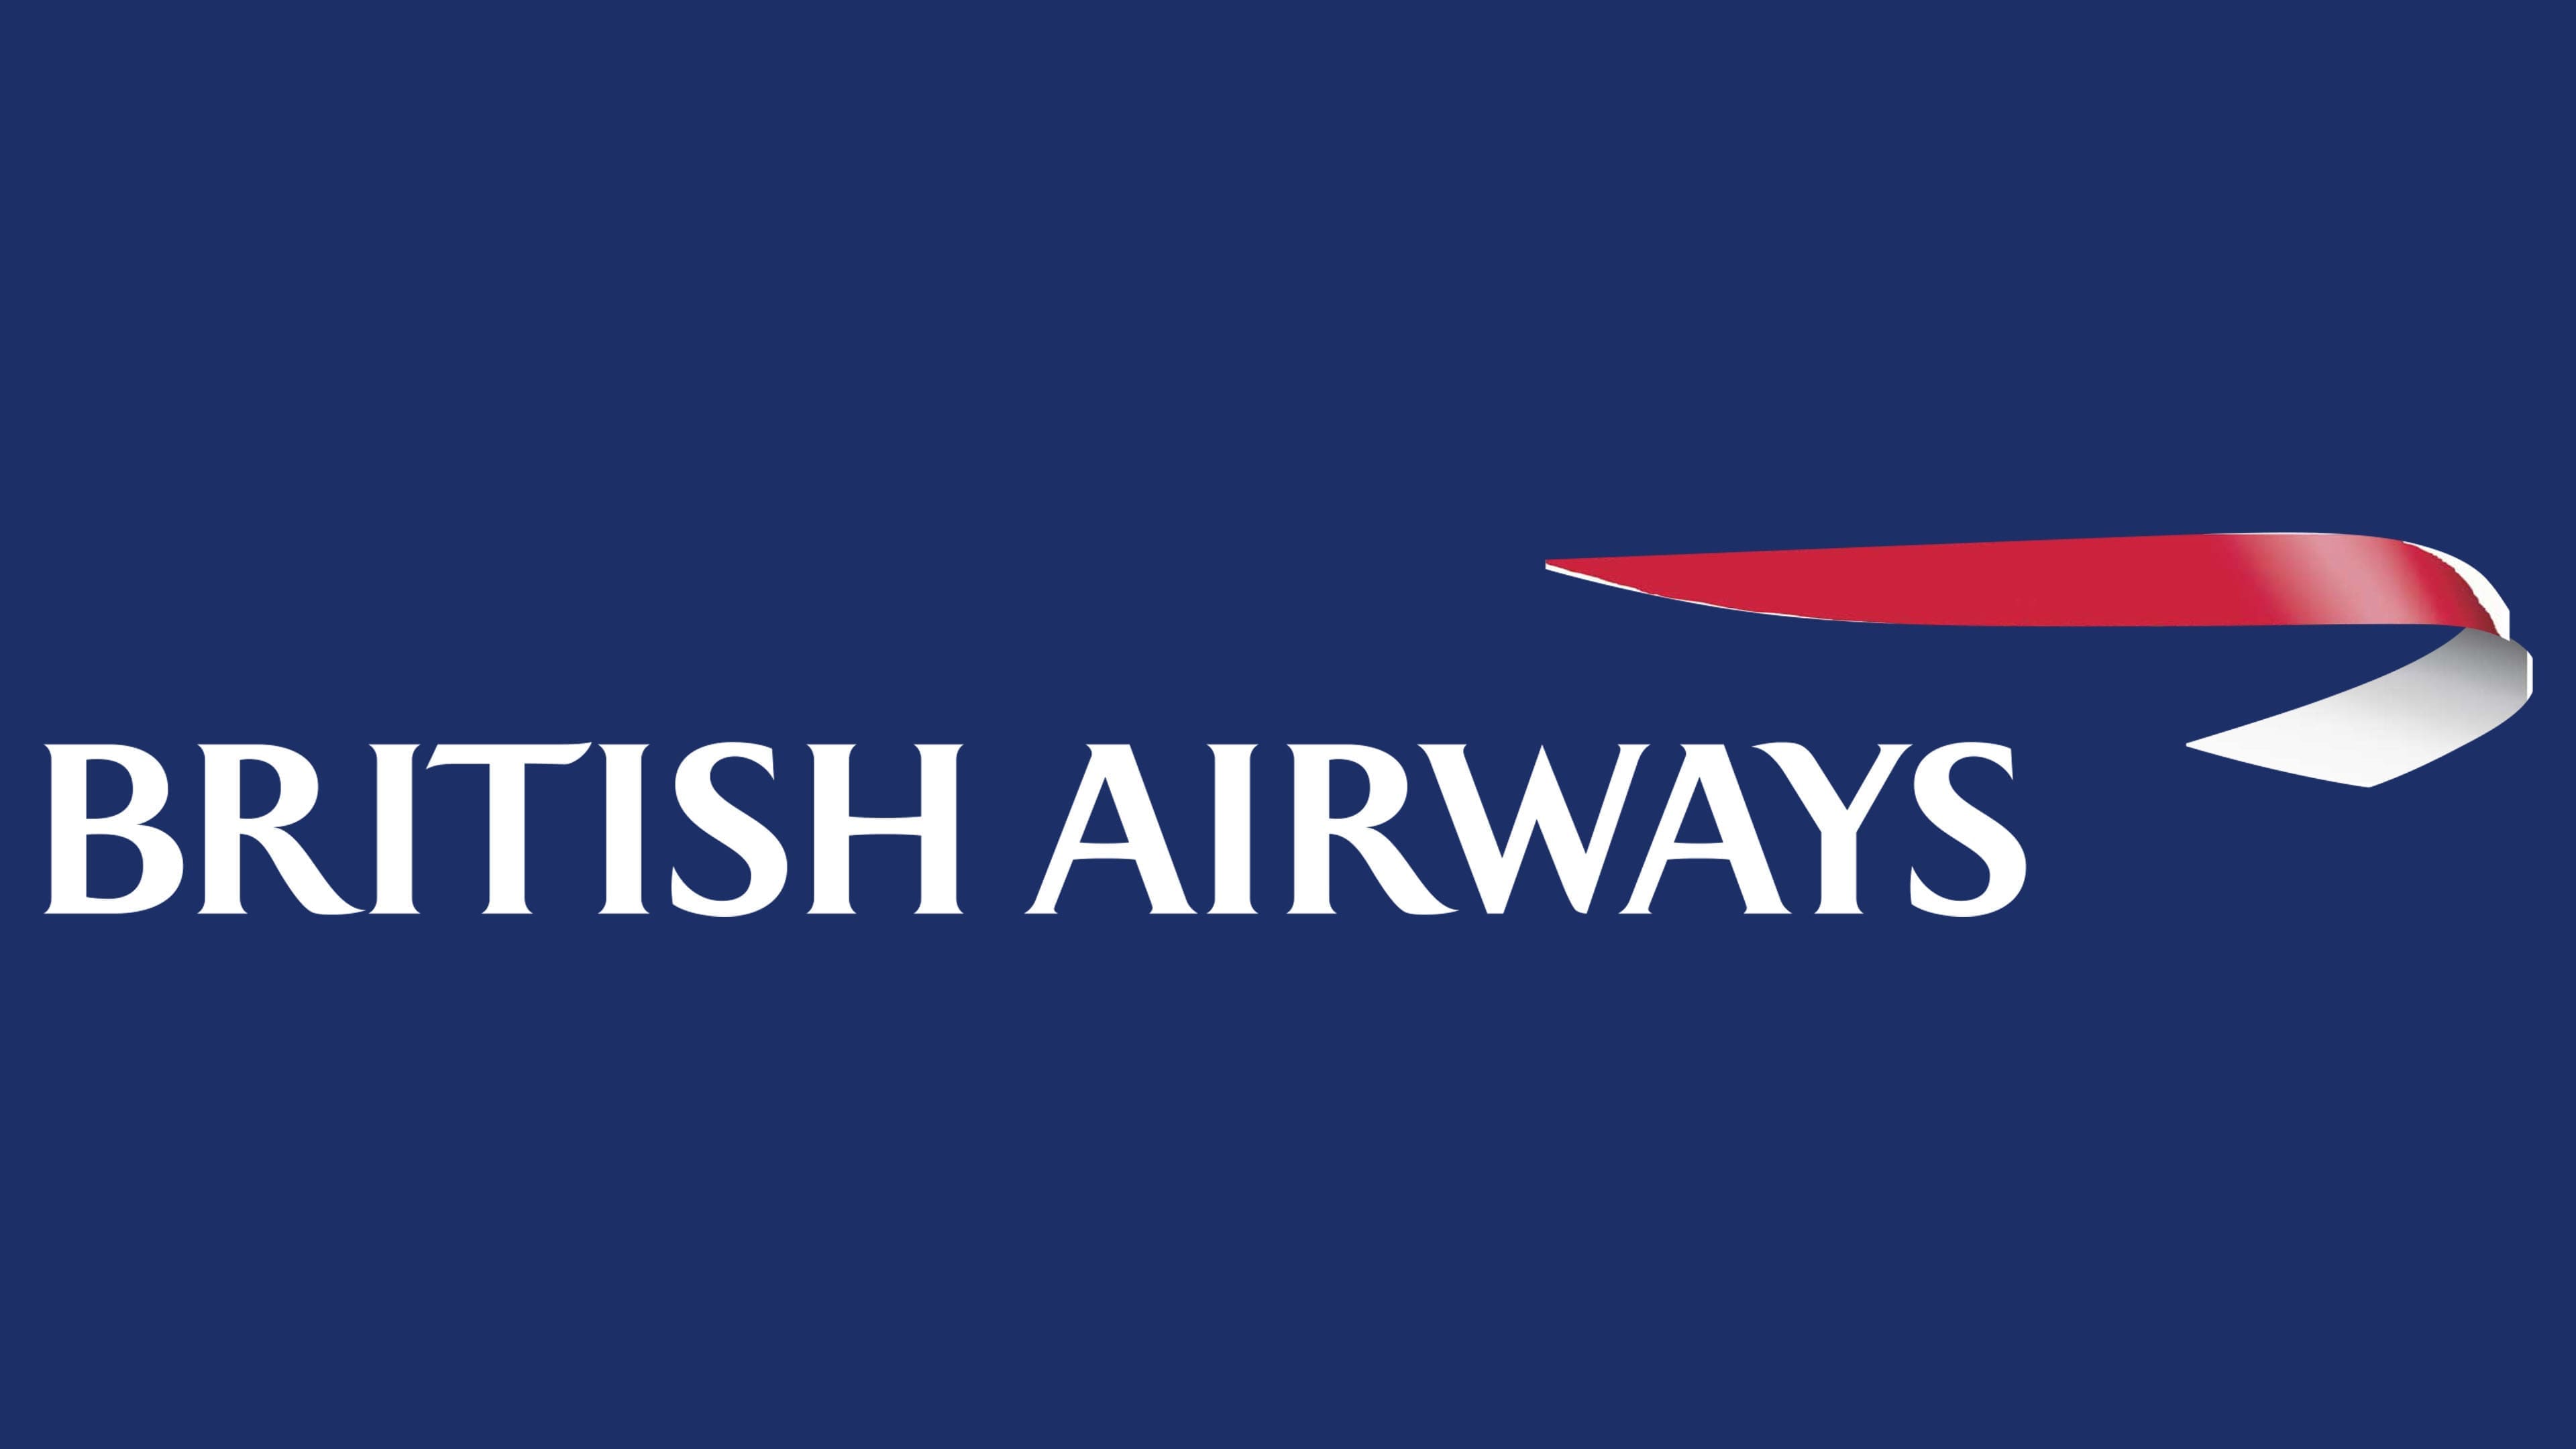 logo british airways